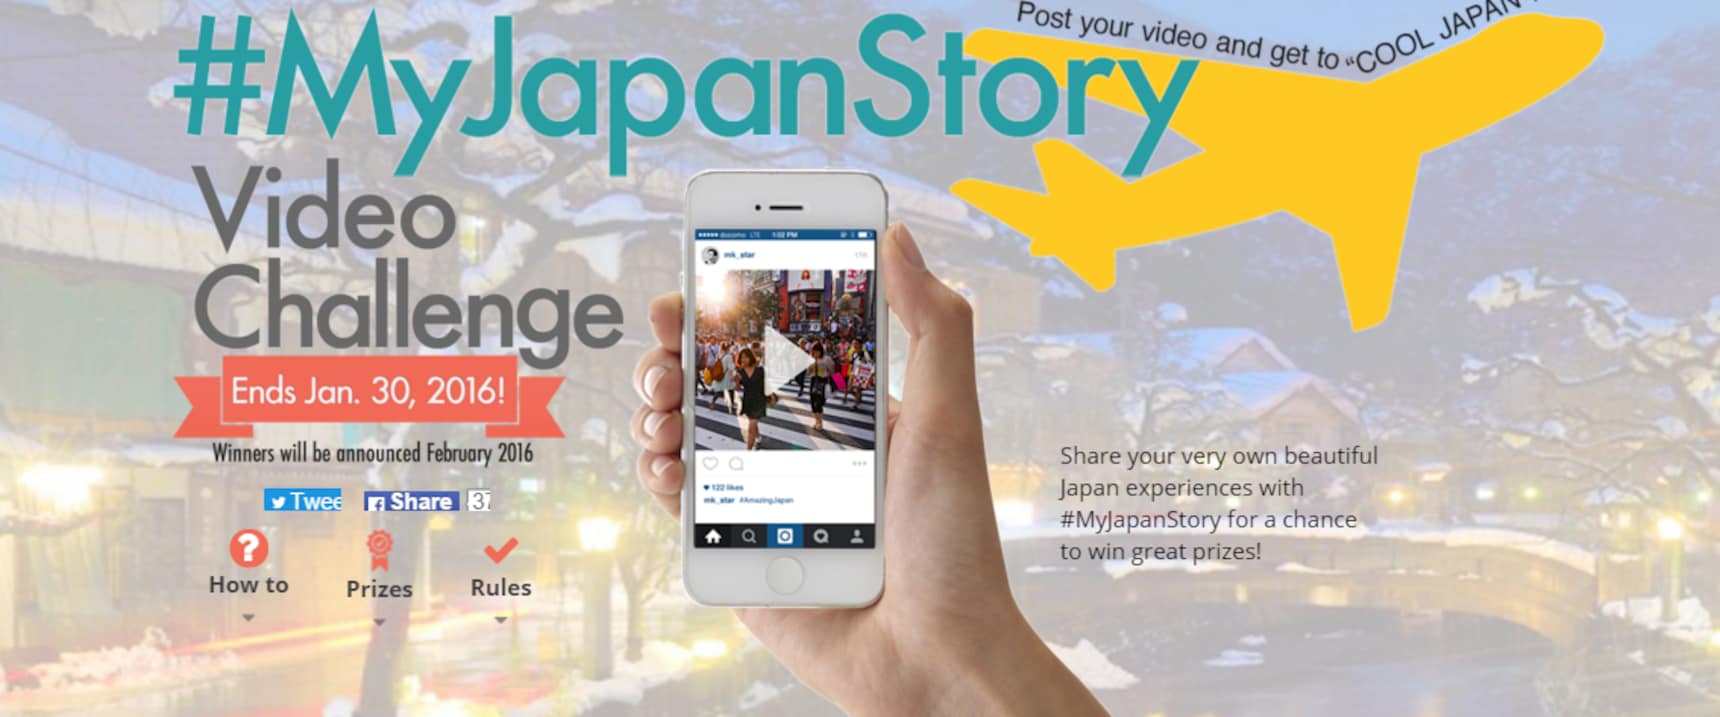 上傳你的精彩短片，重新體驗日本!